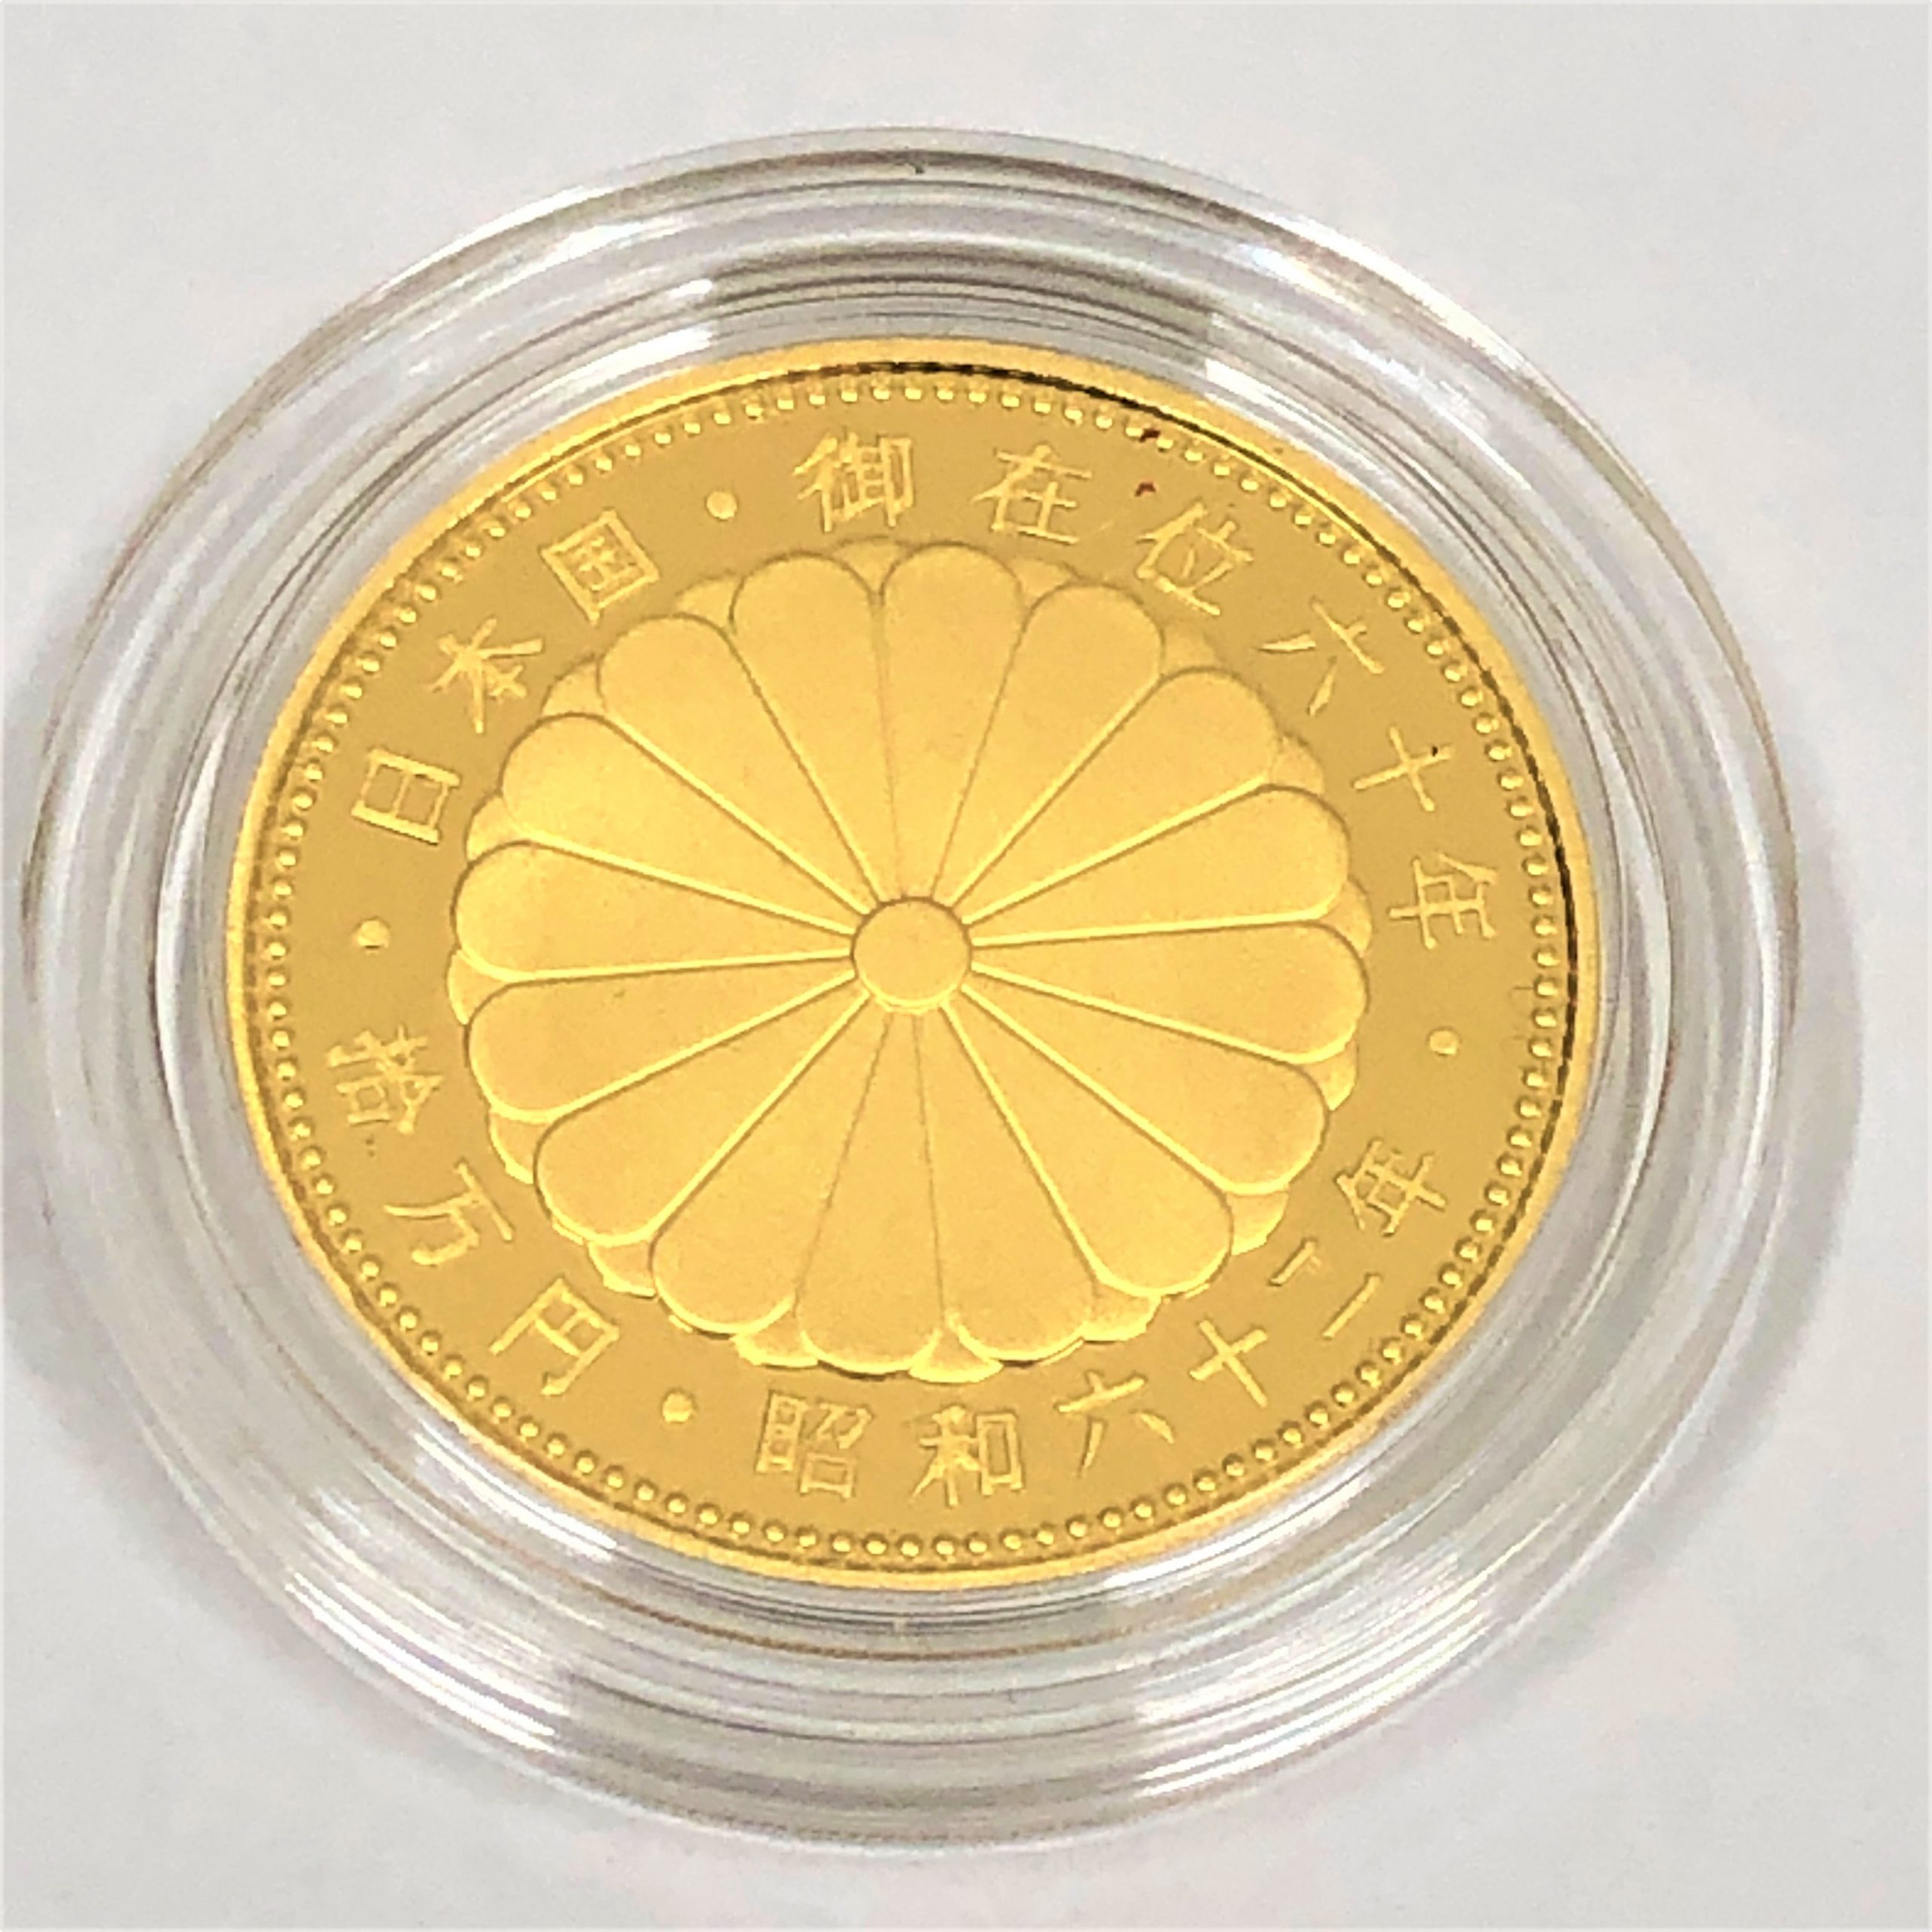 【記念硬貨】天皇陛下御在位六〇年記念10万円硬貨